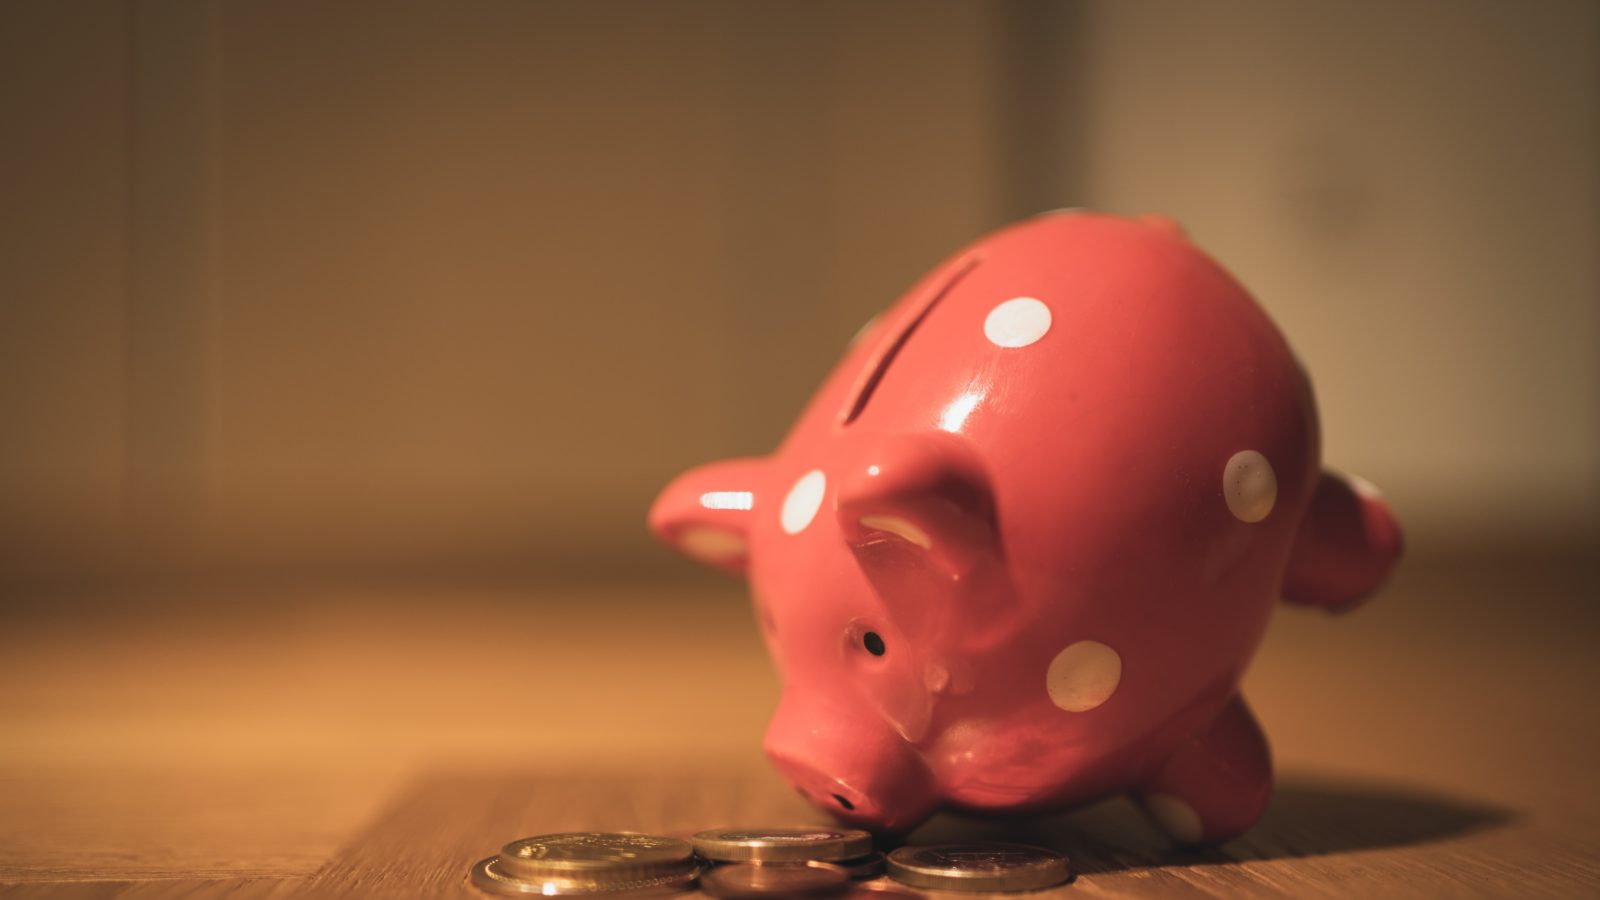 Piggy bank represents shared assets